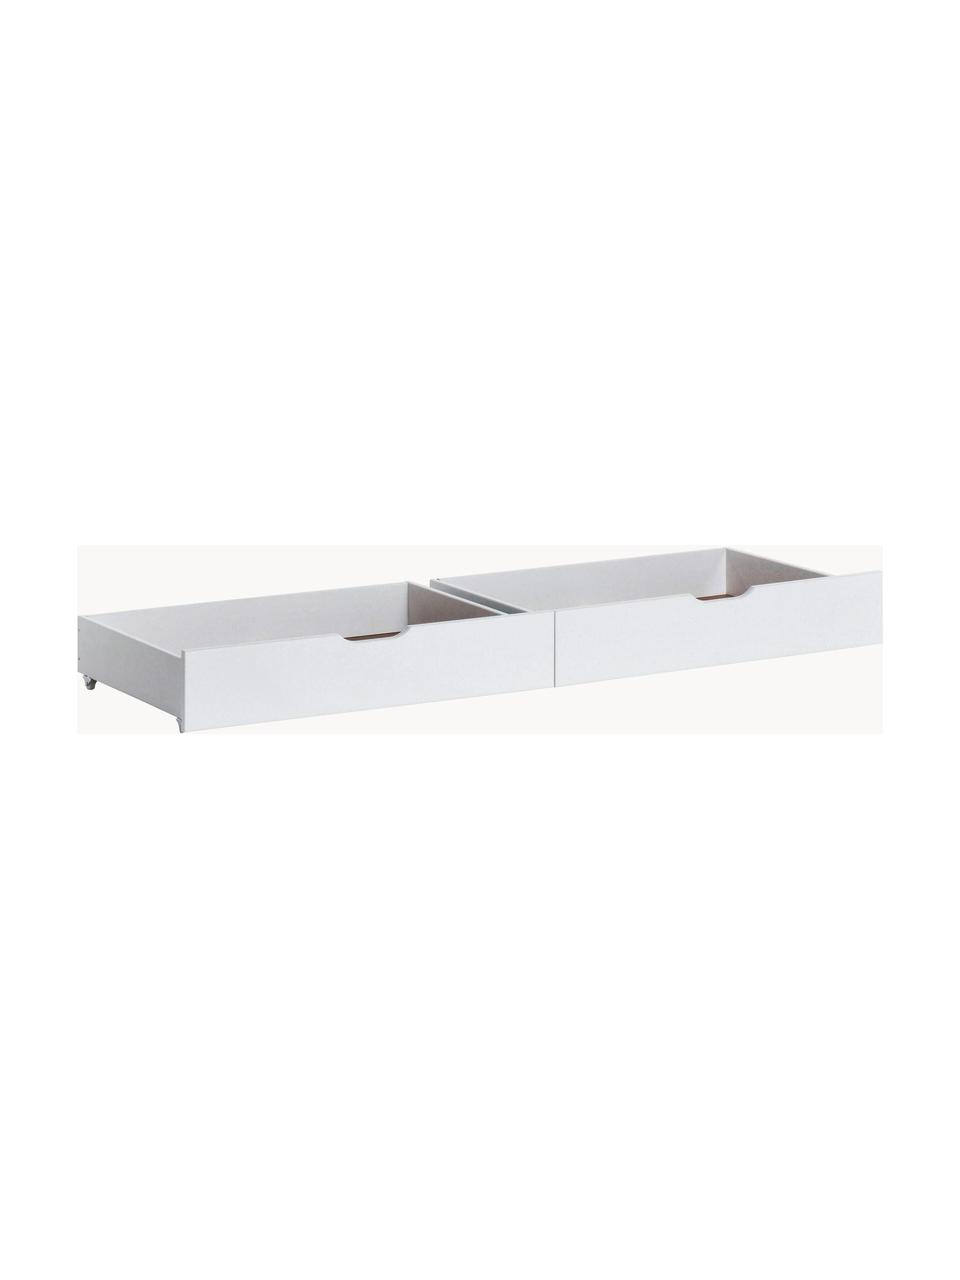 Zásuvky pod postel Eco Comfort, 2 ks, MDF deska (dřevovláknitá deska střední hustoty), certifikace FSC, Dřevo, lakováno bílou barvou, Š 153 cm, H 60 cm